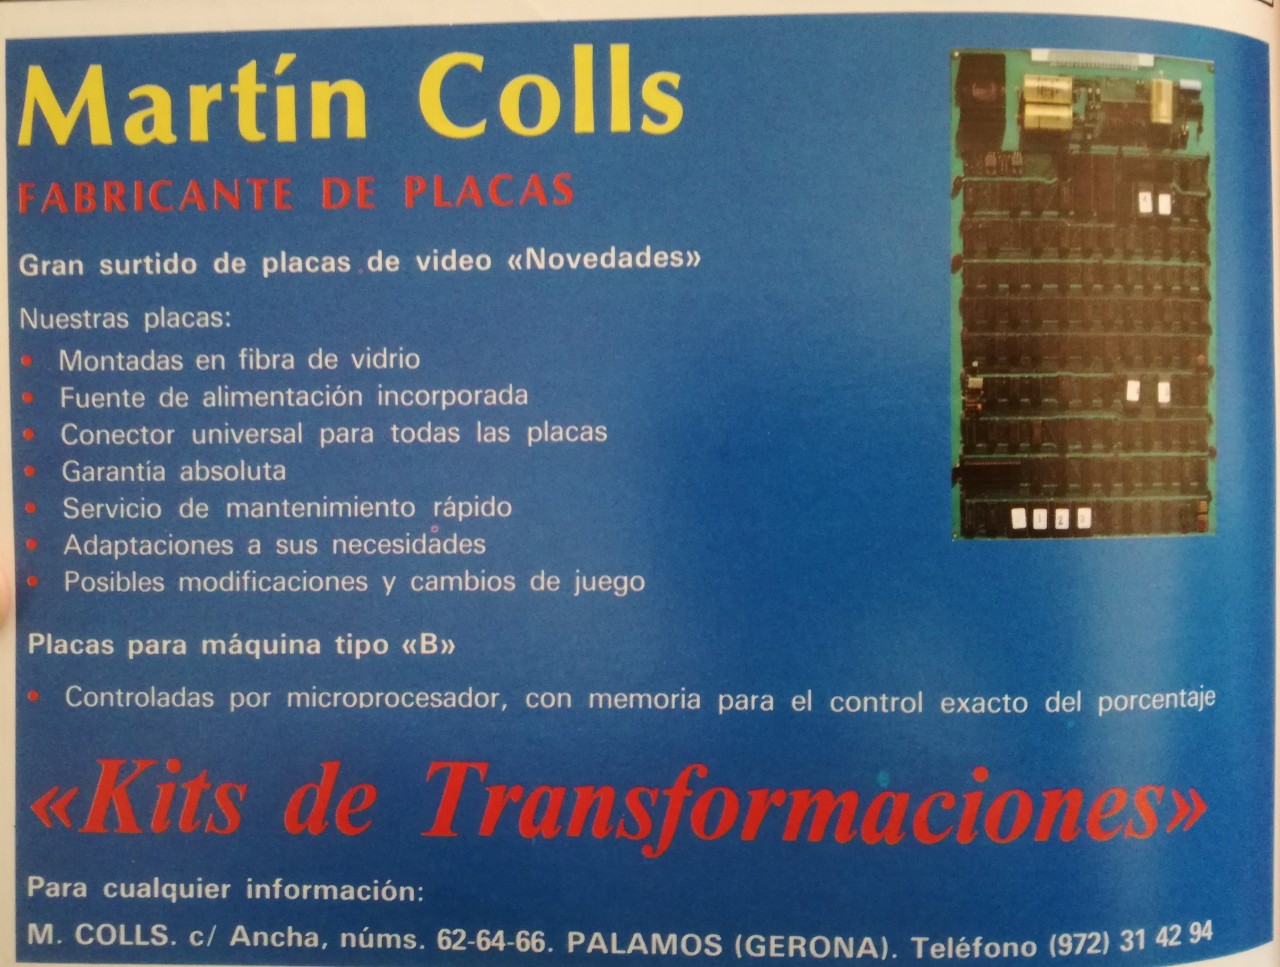 Martín Colls